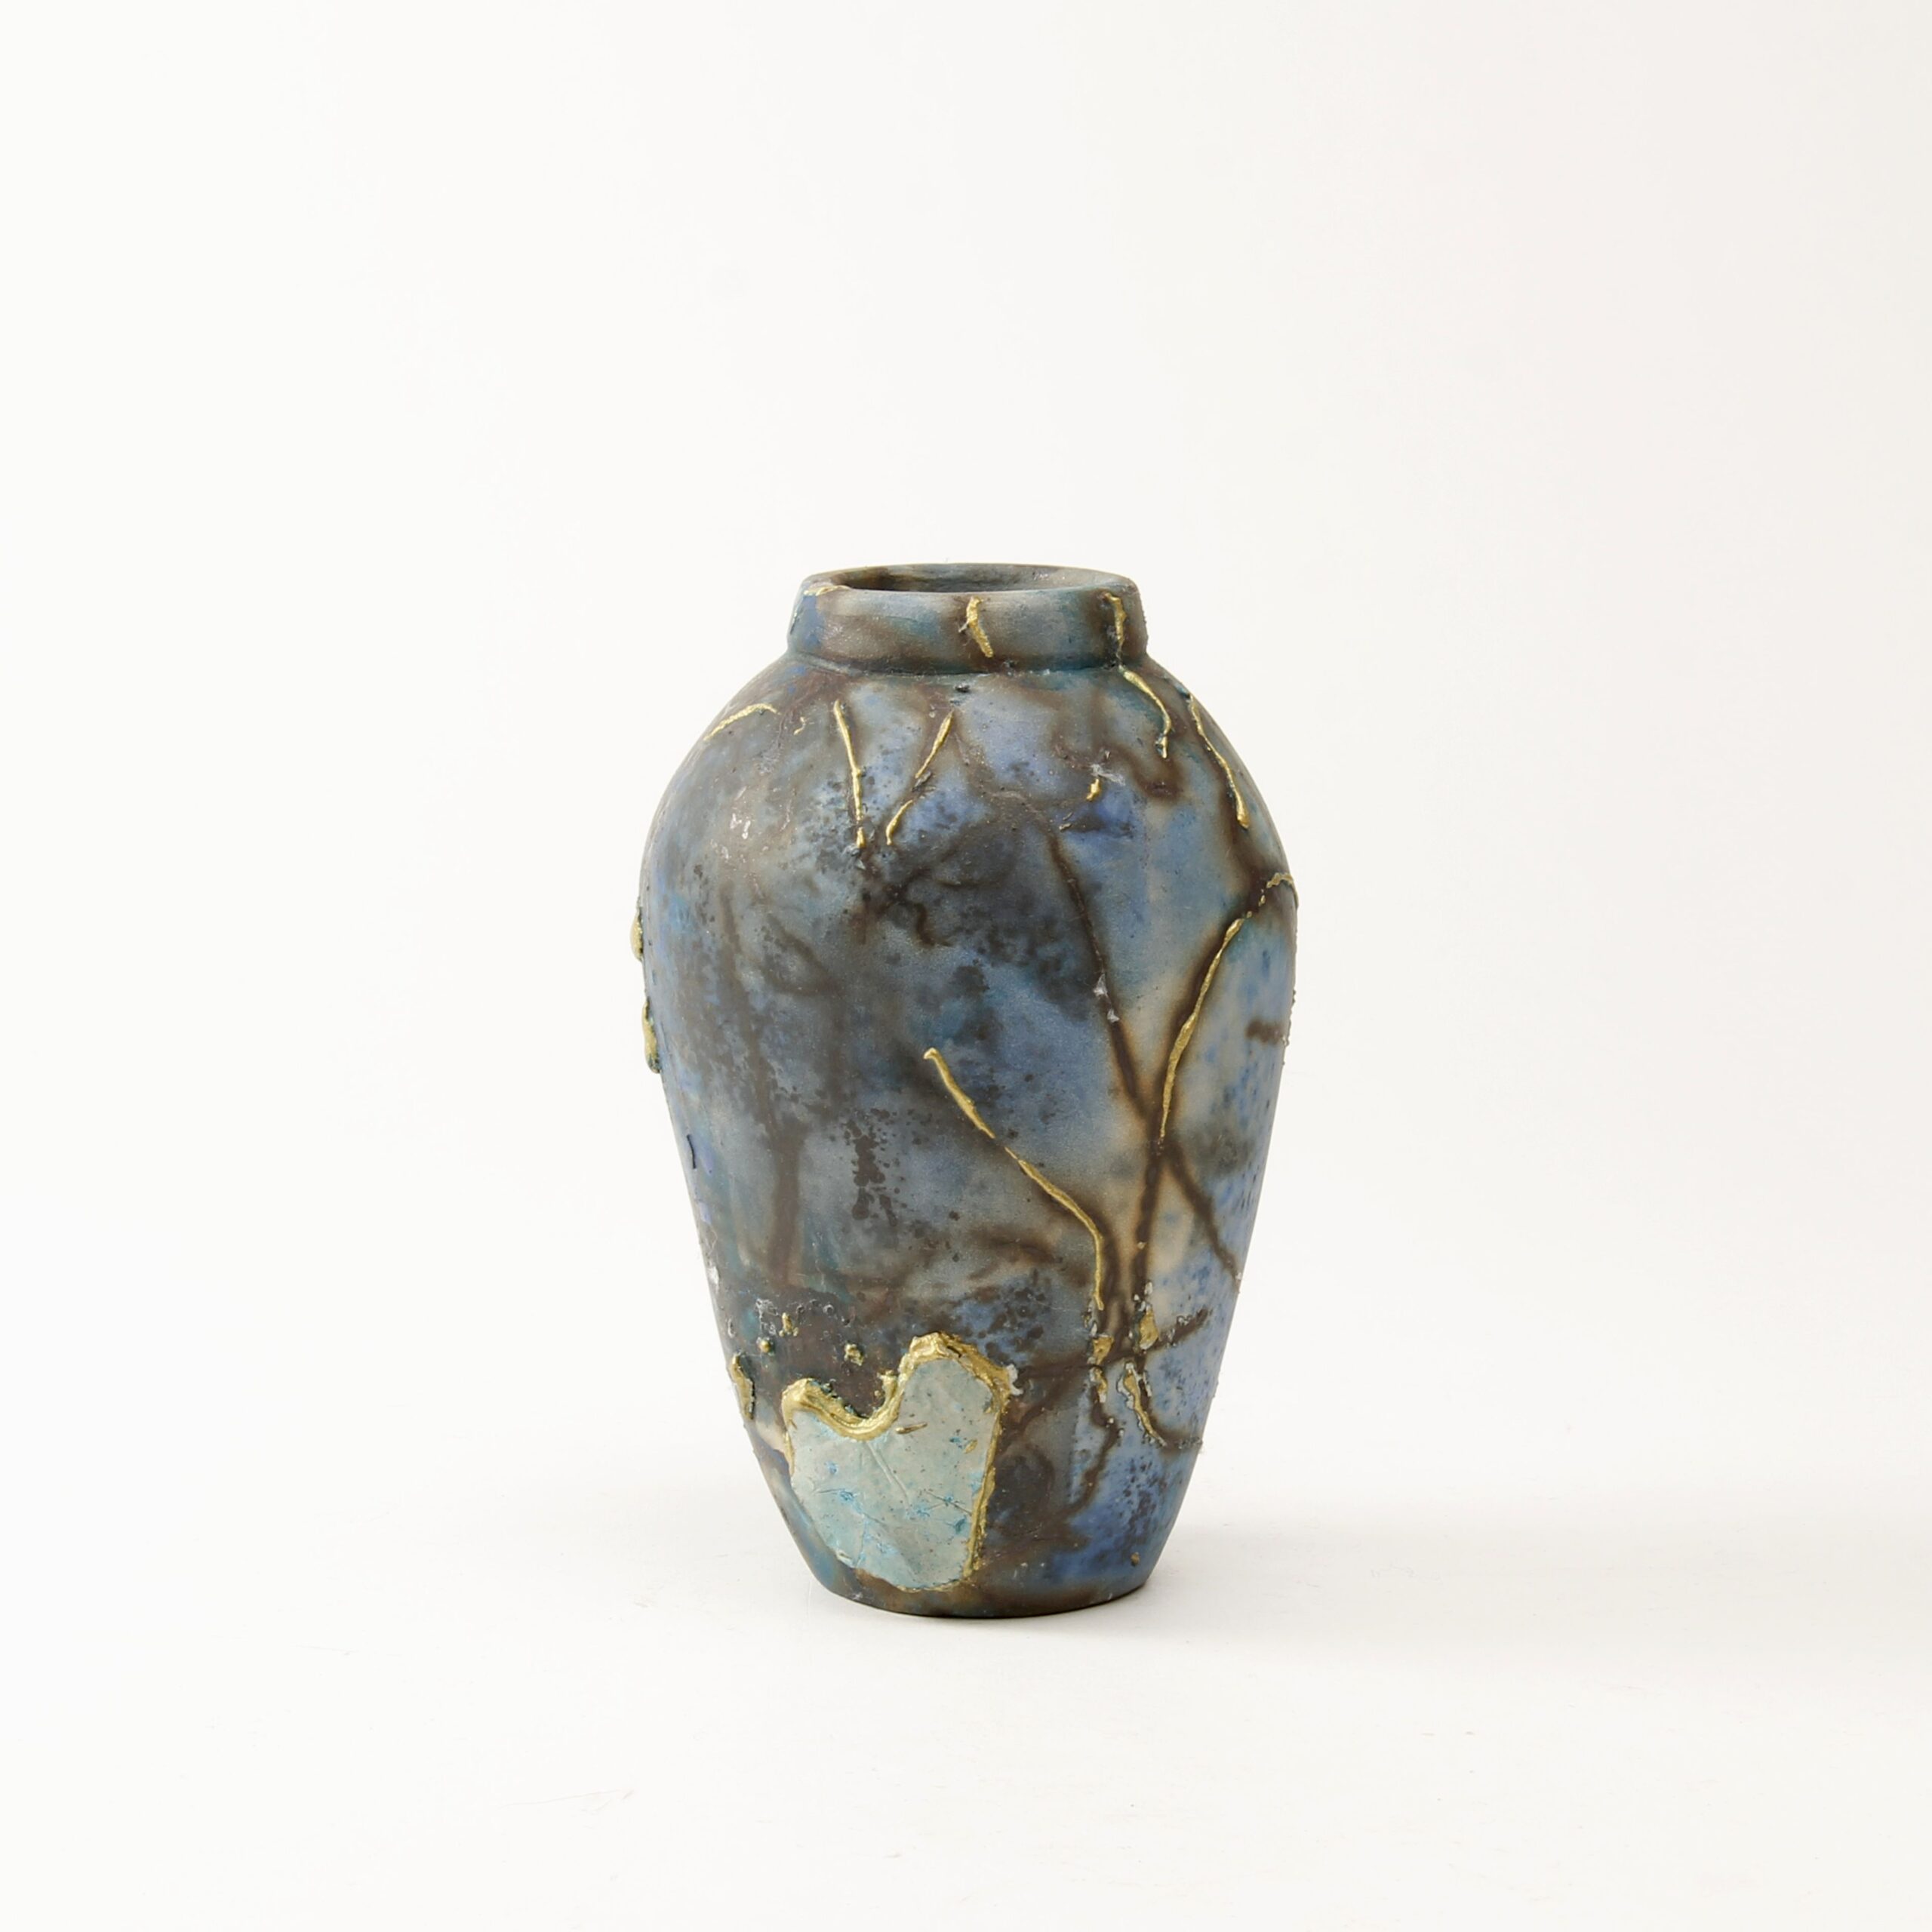 Alison Brannen: Medium Classic Urn Product Image 6 of 6